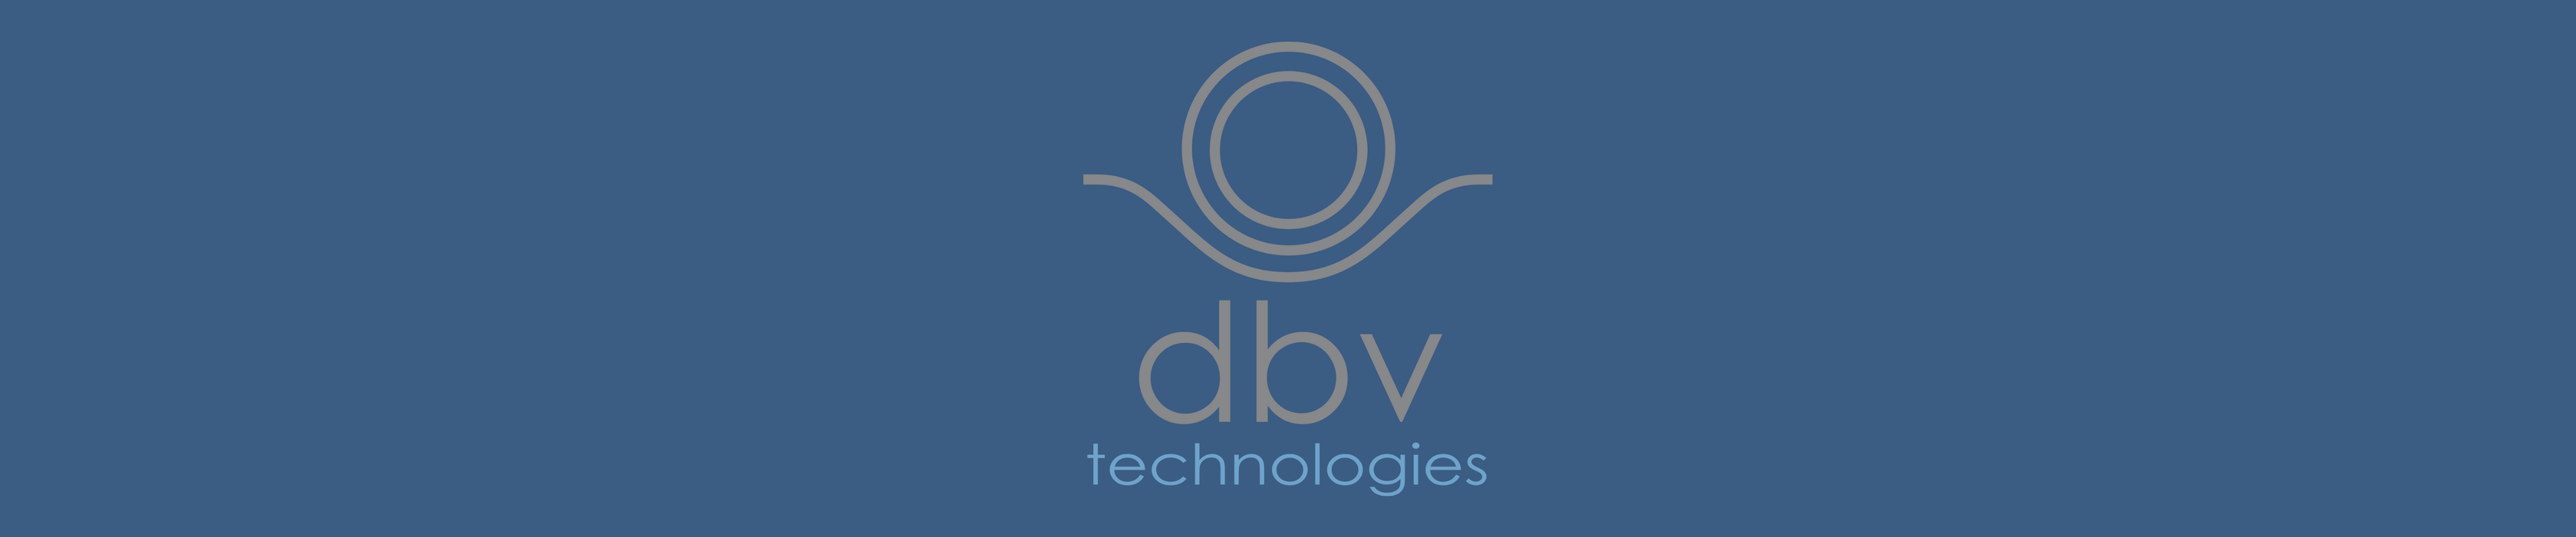 Einhorn360 Banner Visuals - DBV Technology